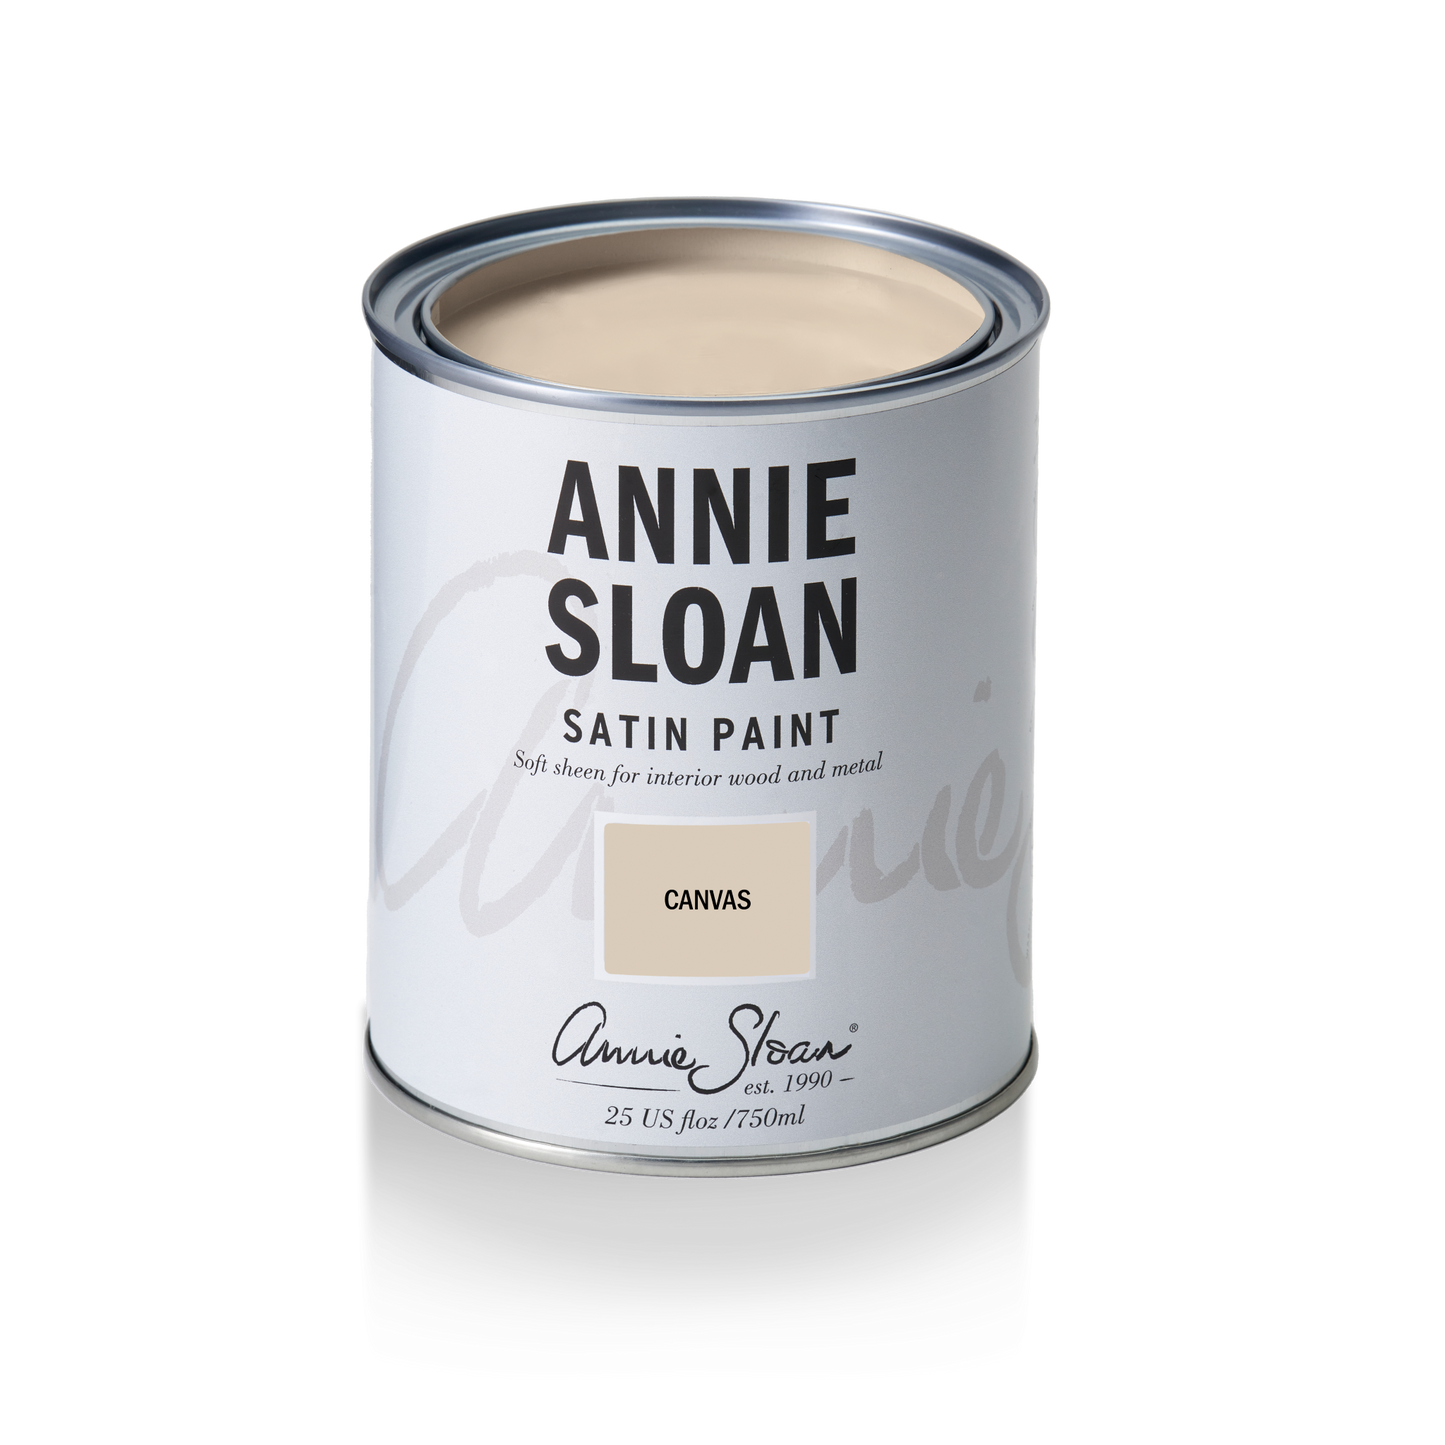 Annie Sloan Satin Paint Canvas, 750 ml Tin